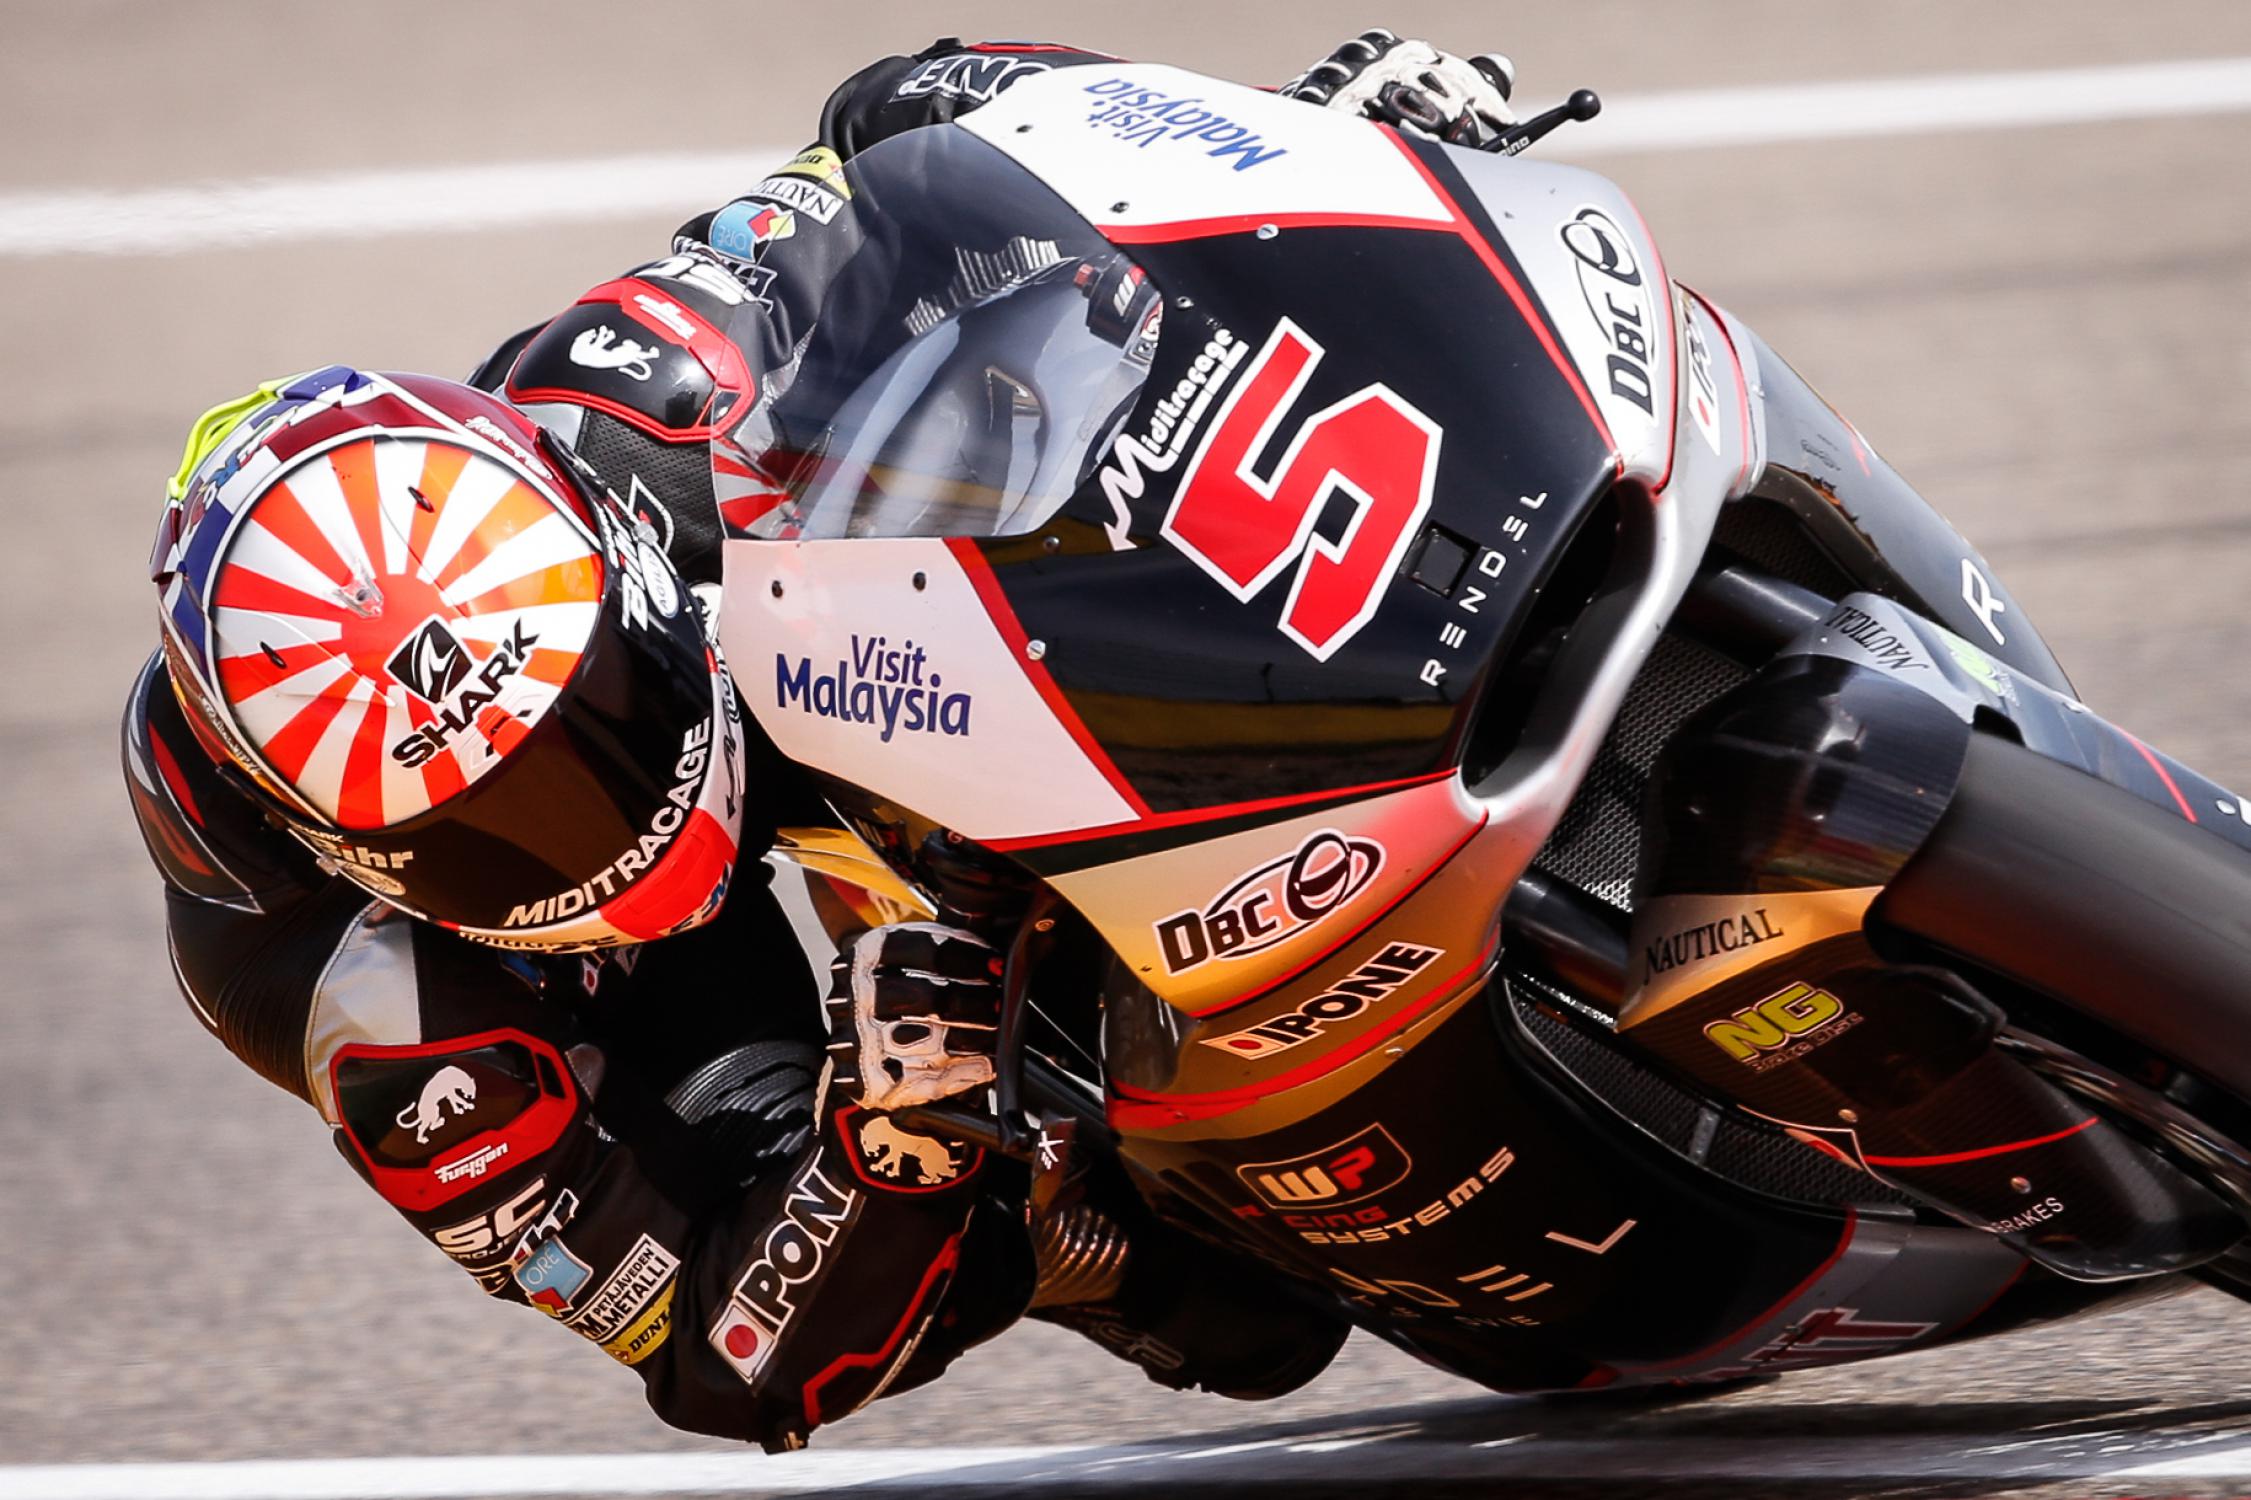 Moto2 Champion Johann Zarco Rumored To Ride With Suzuki In MotoGP